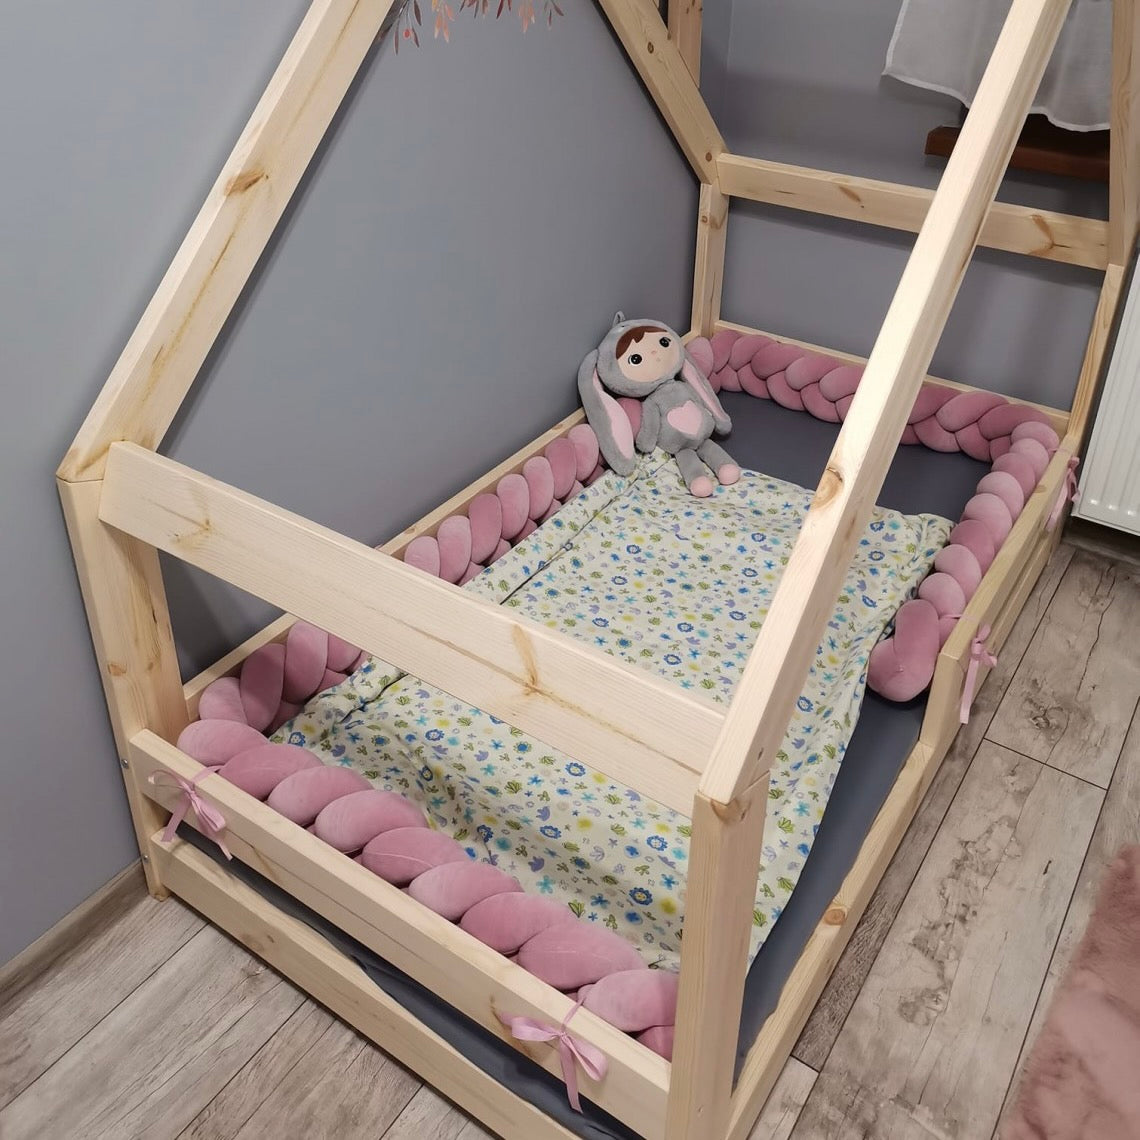 Bettschlange Zopf Samt altrosa im Kinderbett aus Holz